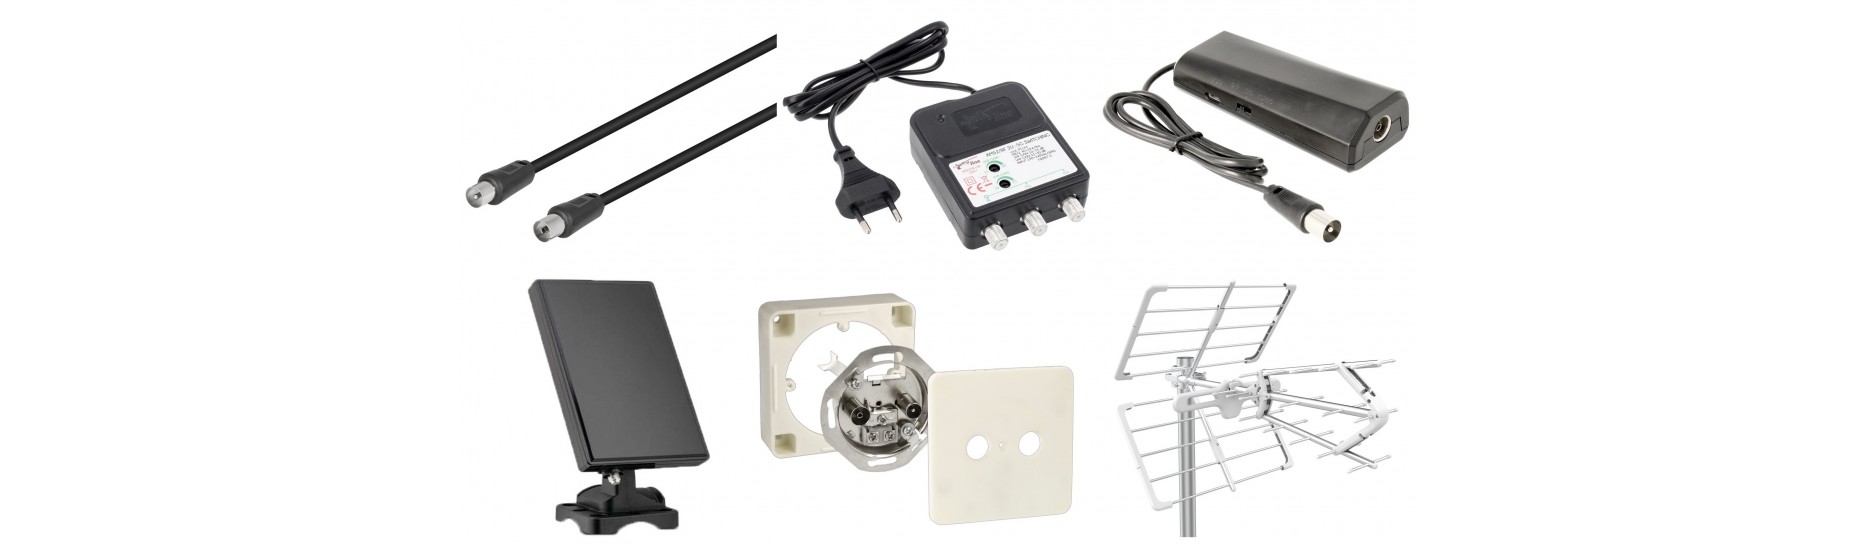 Antenas y Materiales | Comprar Antenas y Accesorios